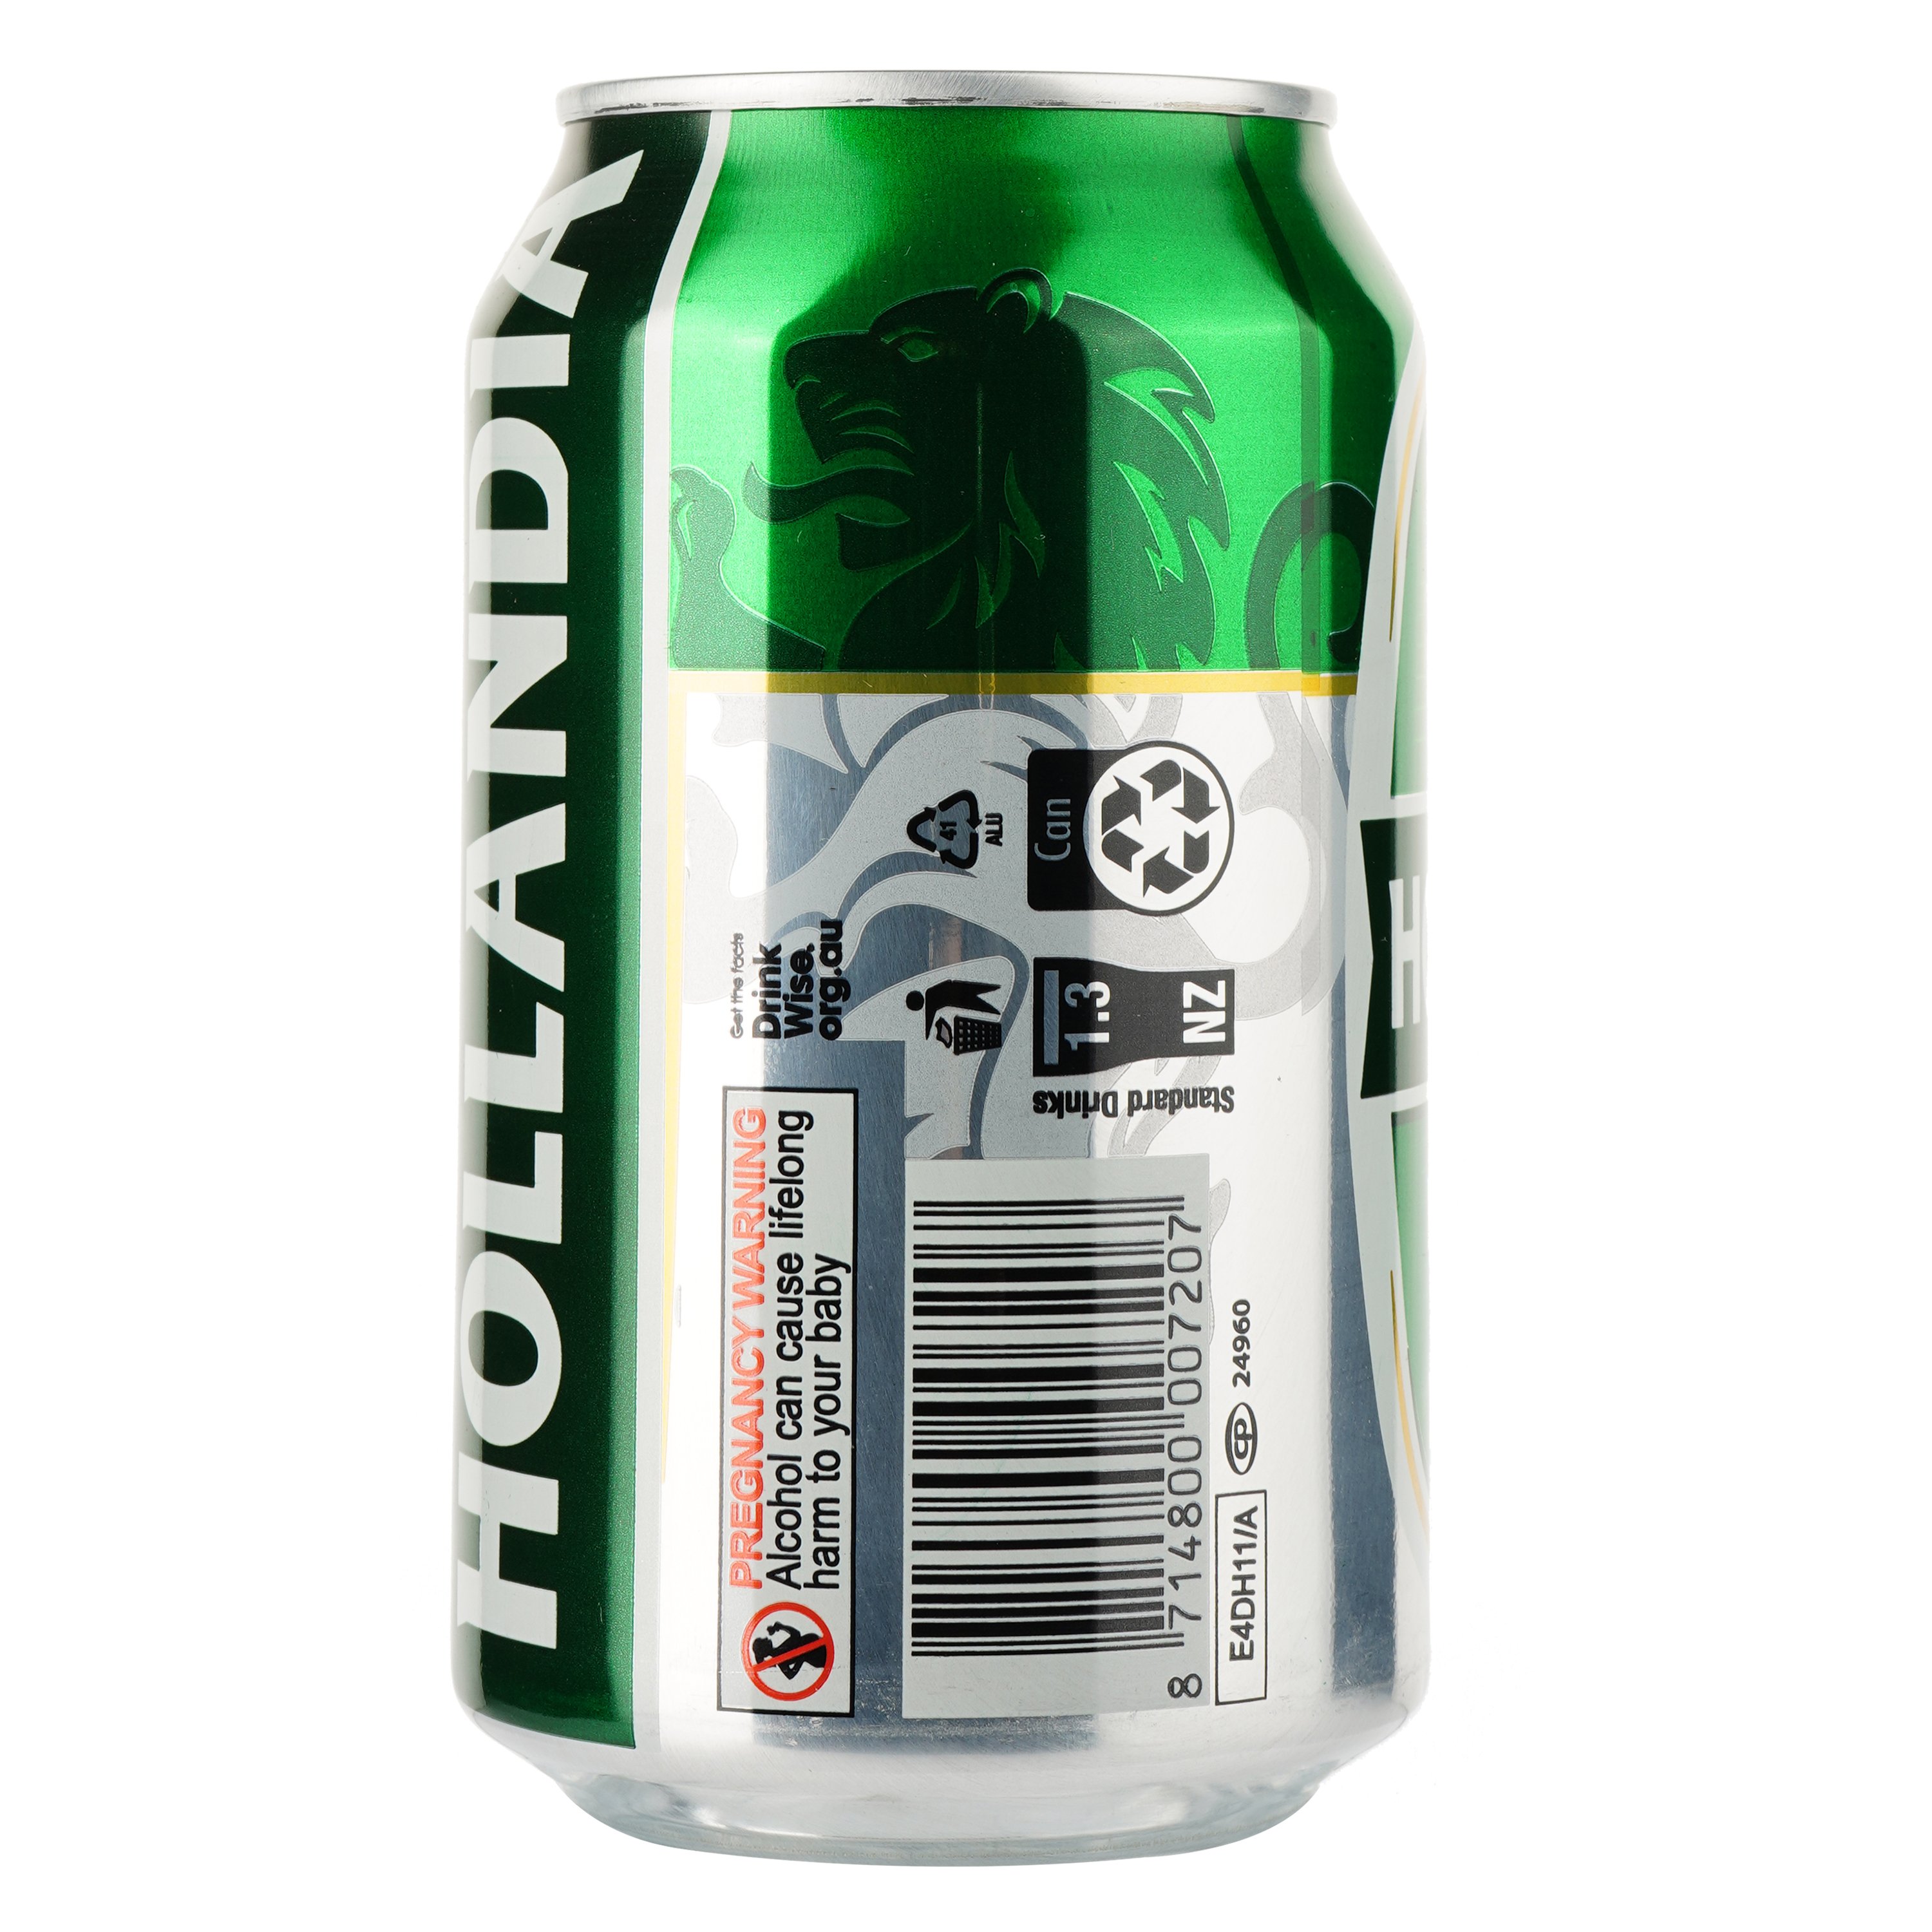 Пиво Hollandia, светлое, фильтрованное, 4,7%, ж/б, 0,33 л - фото 2